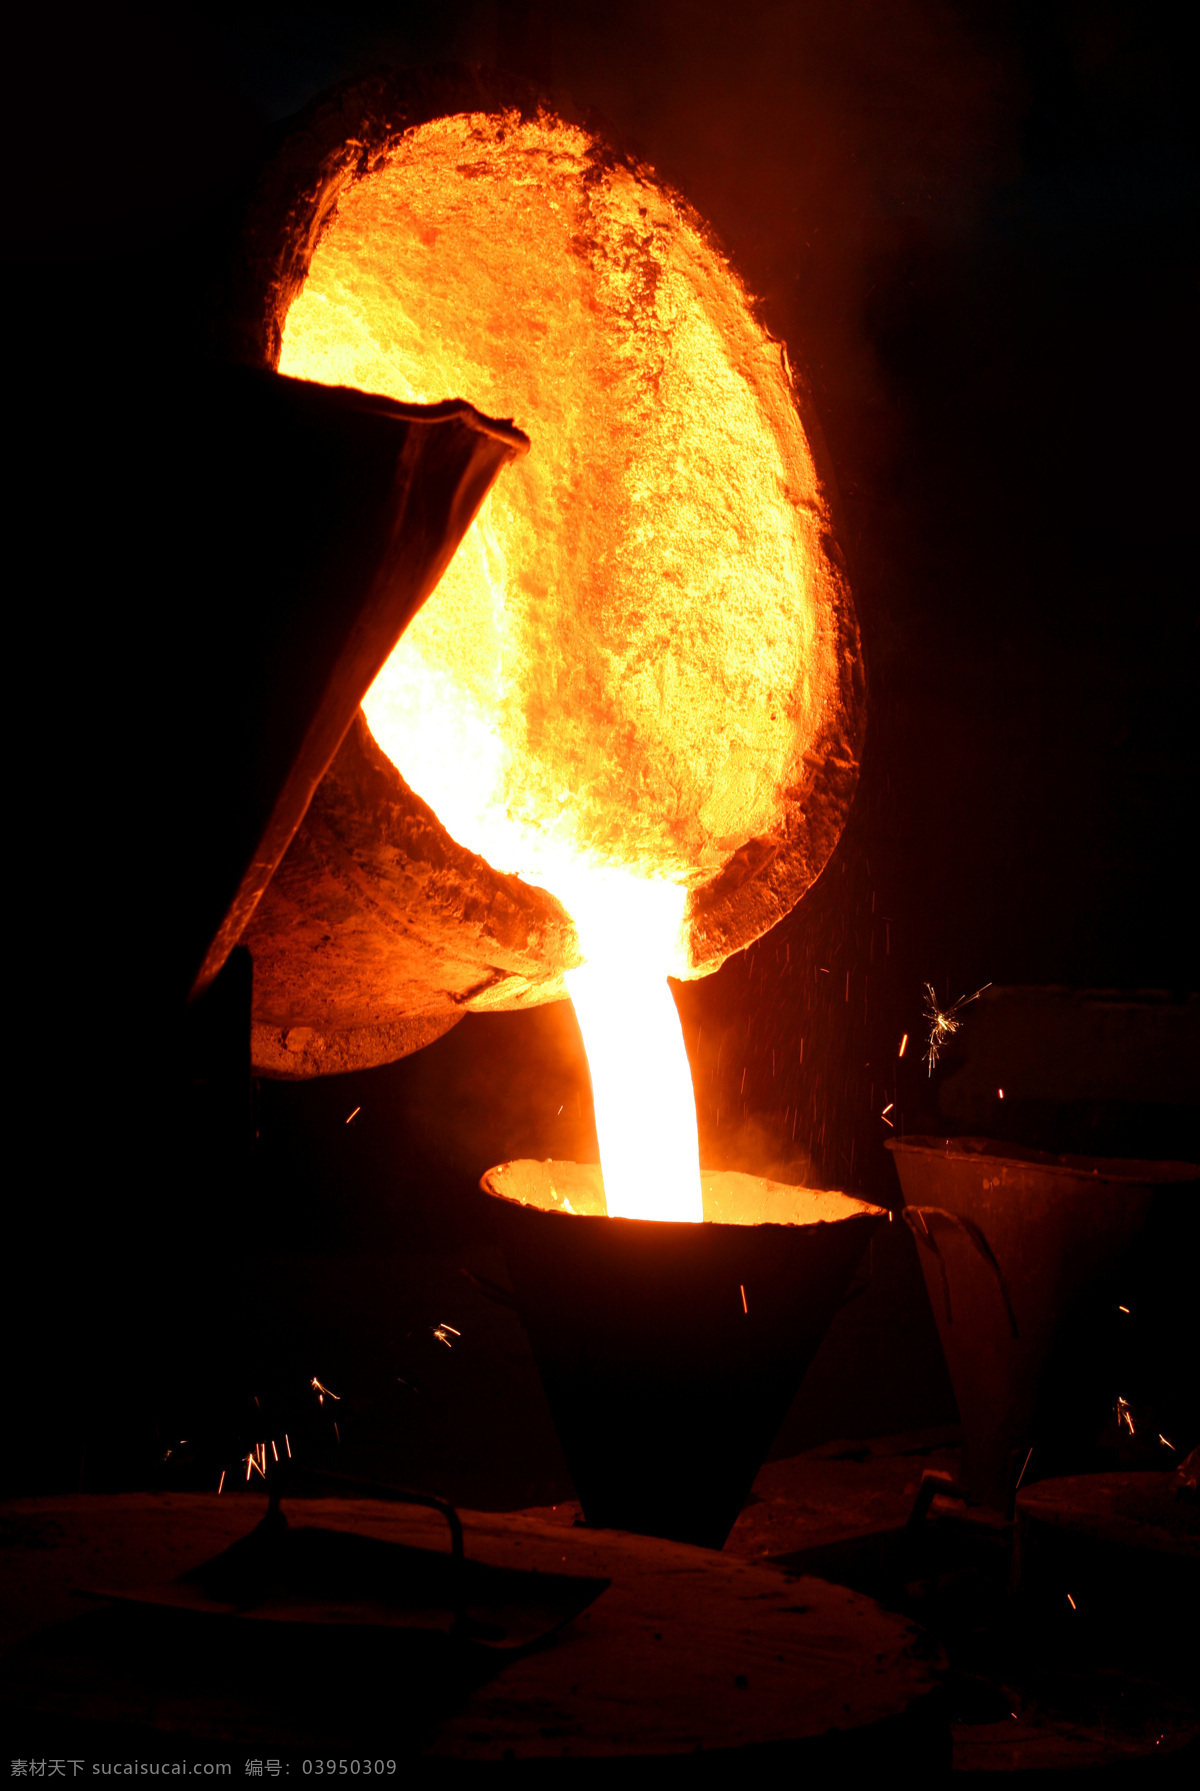 炼钢 钢炉 火炉 炼铁 高炉 钢铁生产 红火 冶炼 科技 高温 飞溅 钢水 现代工业 工业生产 现代科技